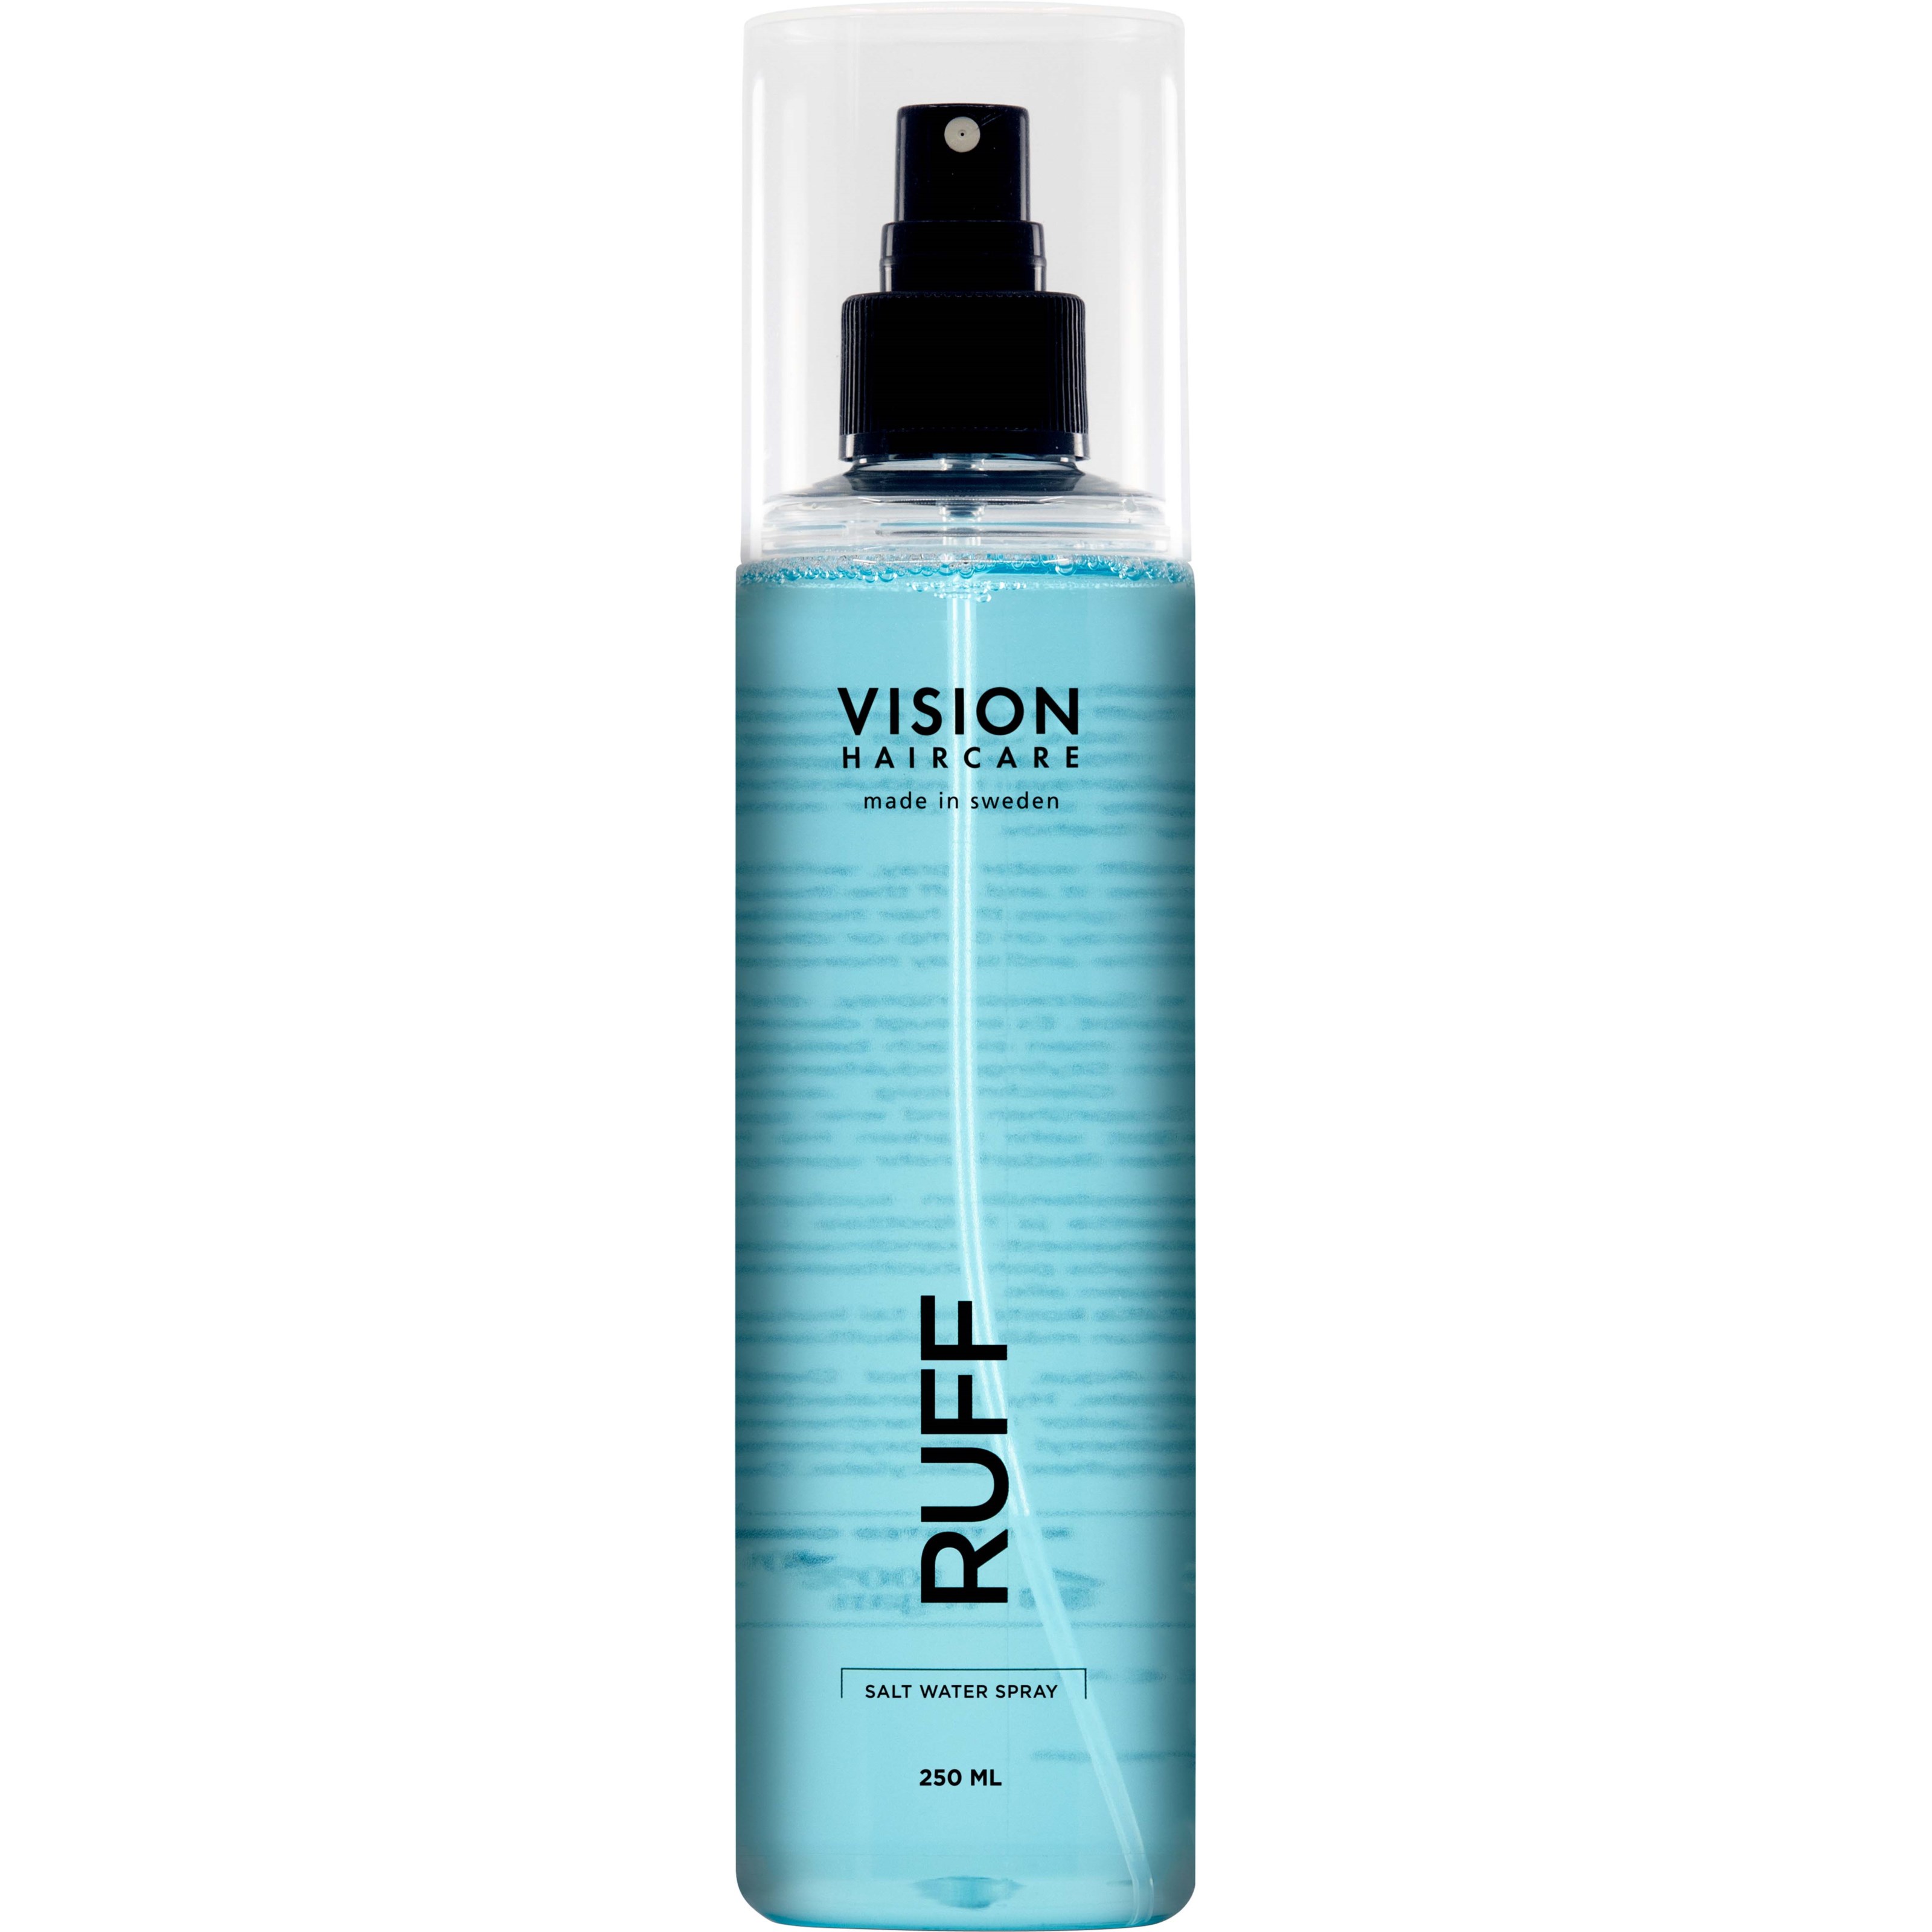 Läs mer om Vision Haircare Ruff Saltvattenspray 250 ml